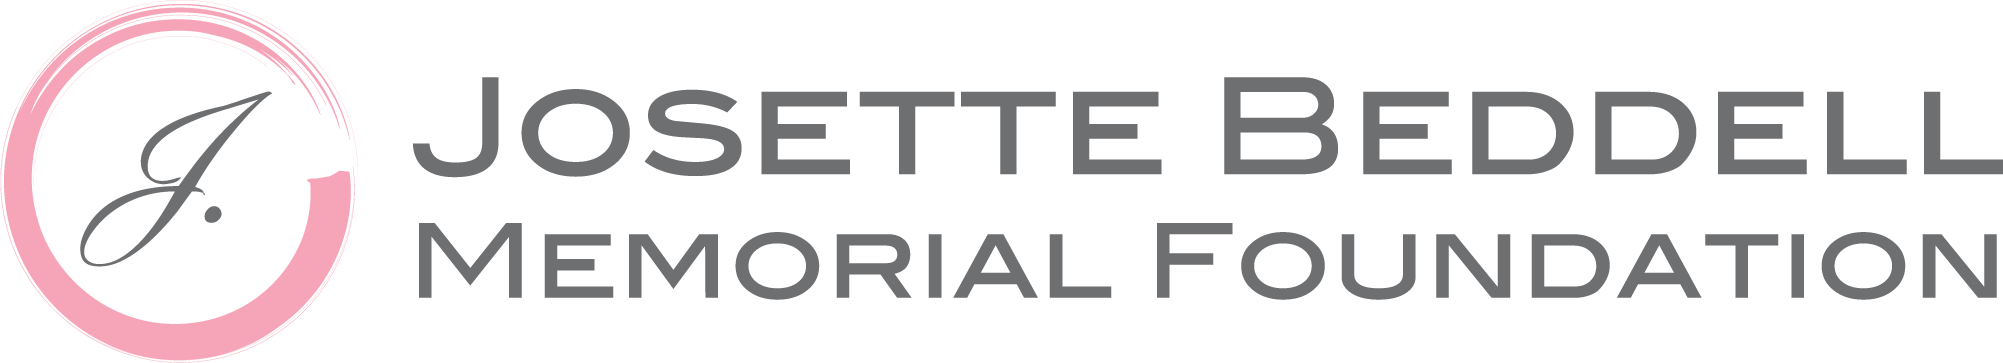 Josette Beddell Memorial Foundation